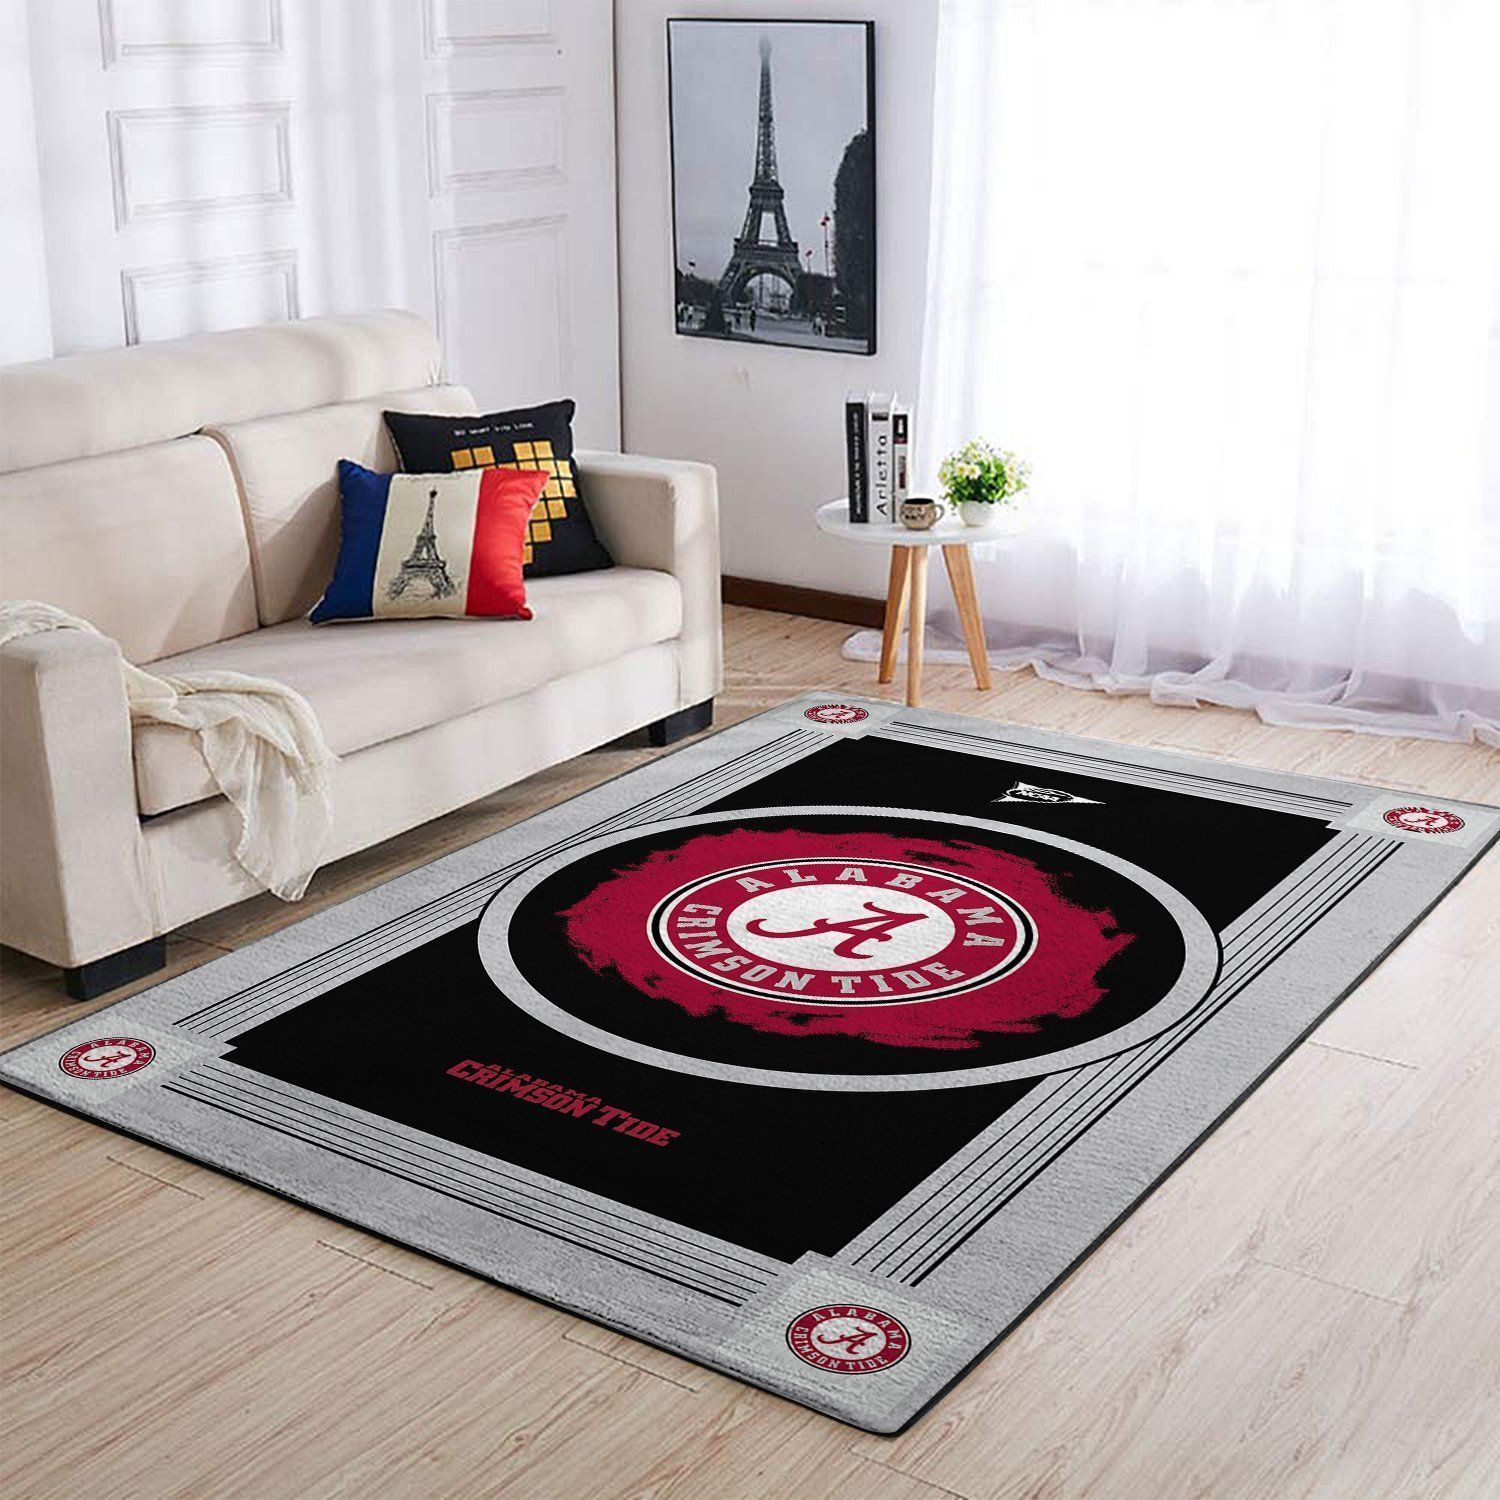 Alabama Crimson Tide Ncaas Team Logo Type 8215 Rug Home Decor Area Carpet Living Room